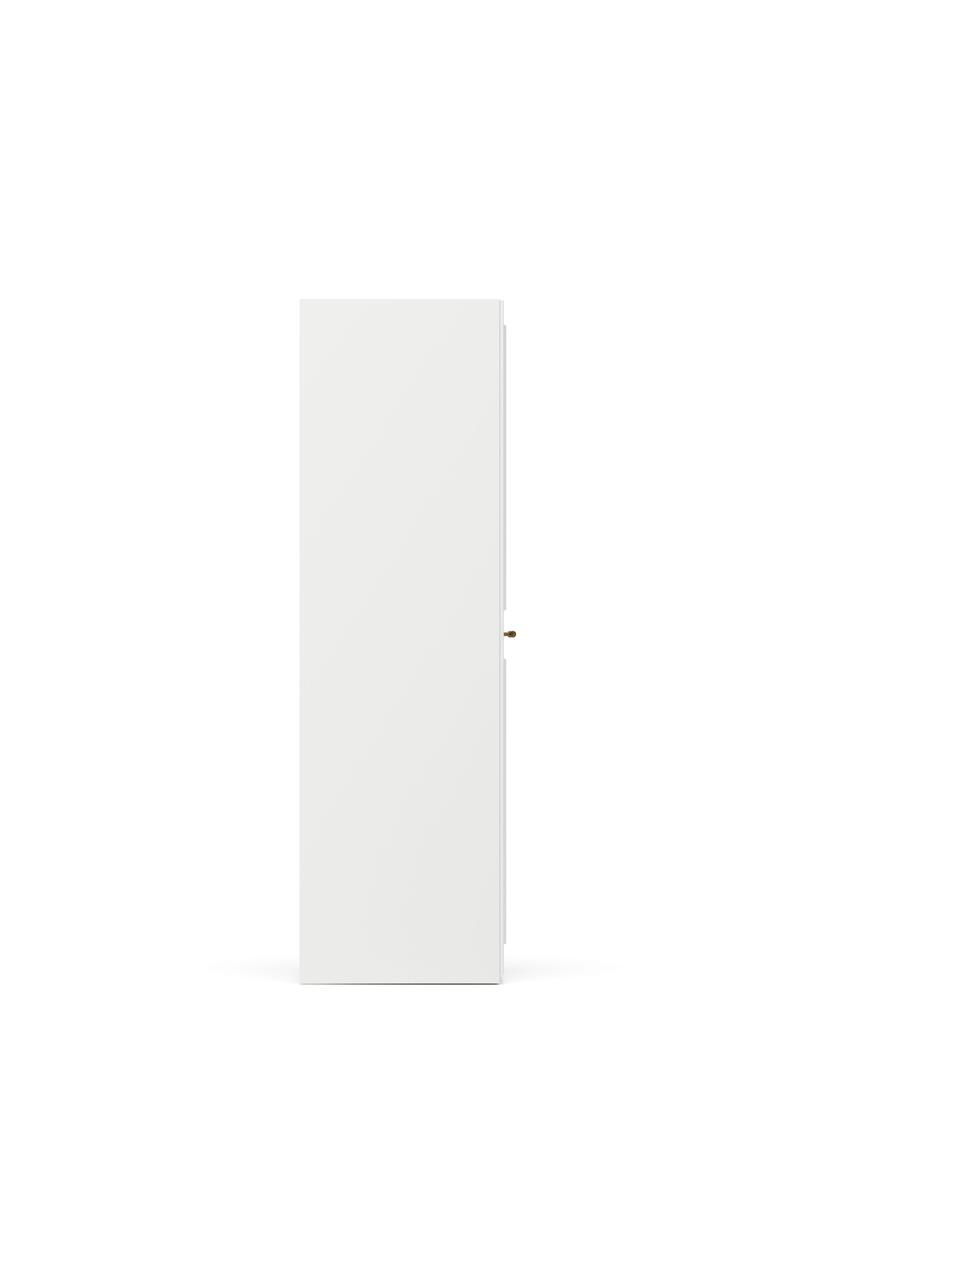 Modularer Drehtürenschrank Charlotte in Weiß mit 5 Türen, verschiedene Varianten, Korpus: Spanplatte, melaminbeschi, Weiß, B 250 x H 200 cm, Basic Interior